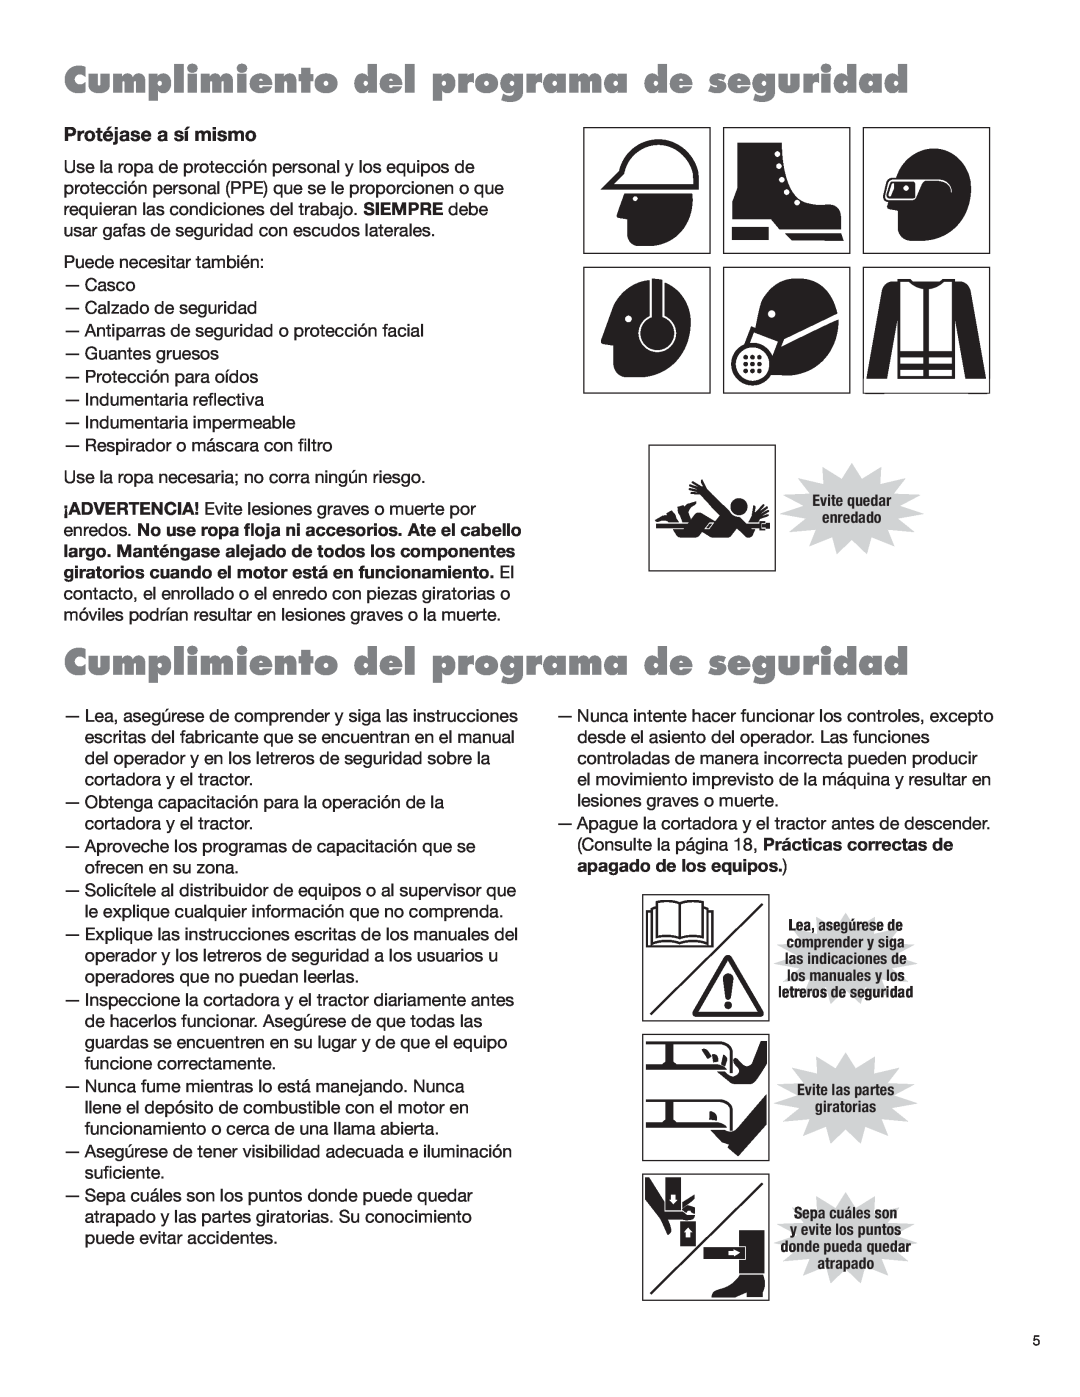 Blue Rhino FC-0025, FC-0024 manual Cumplimiento del programa de seguridad, Protéjase a sí mismo 